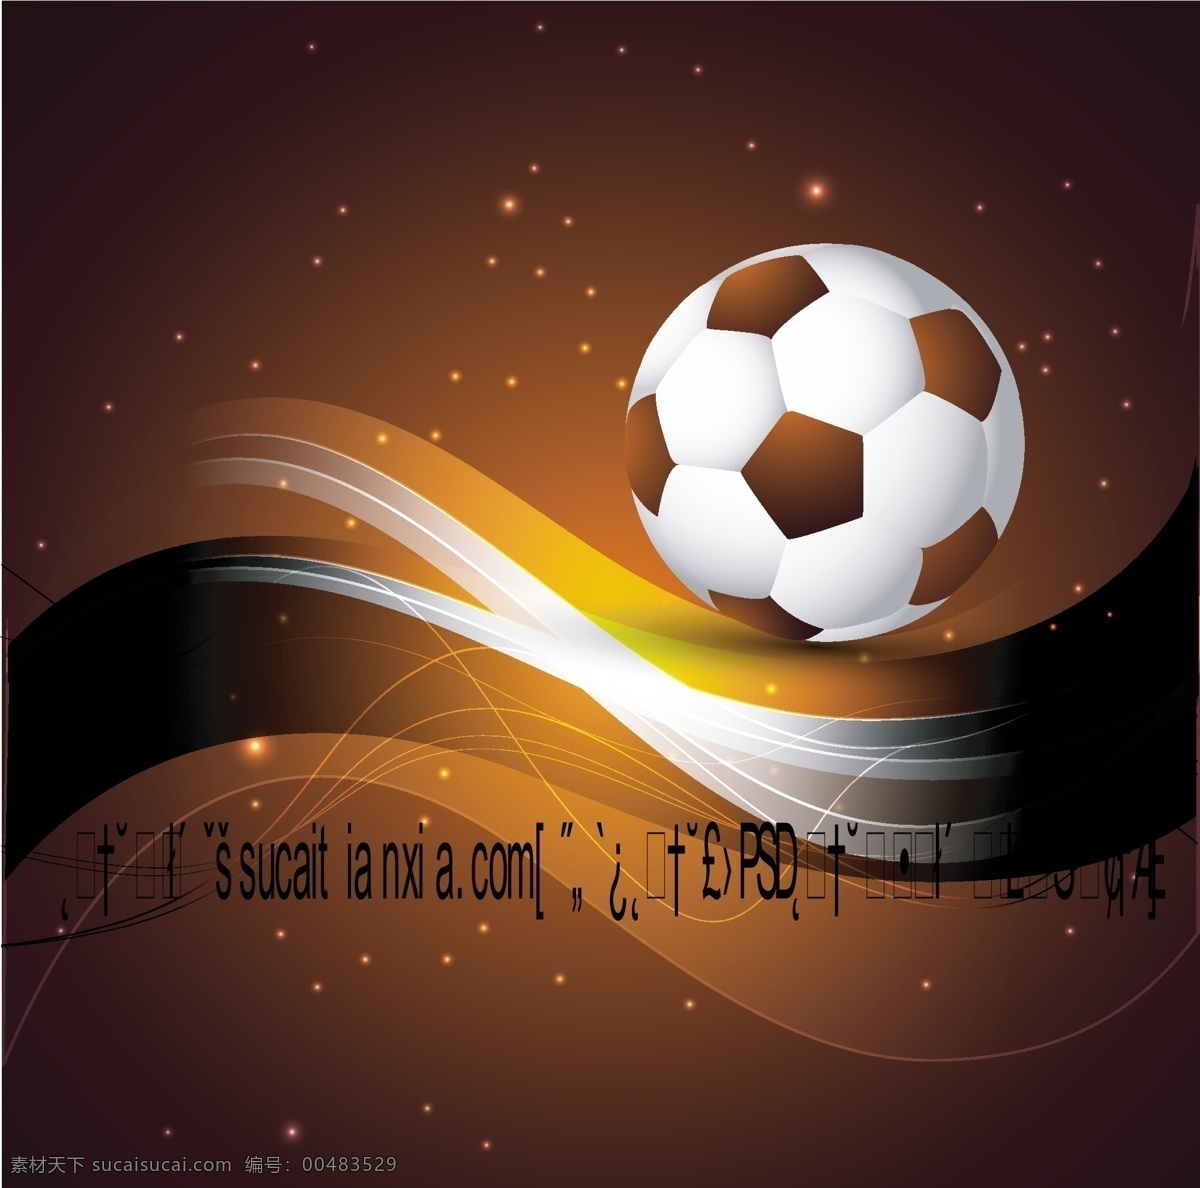 2012 年 足球 主题 宣传海报 矢量 素 光点 广告海报 曲线 线条 艺术字体 足球主题 宣传 海报 其他海报设计